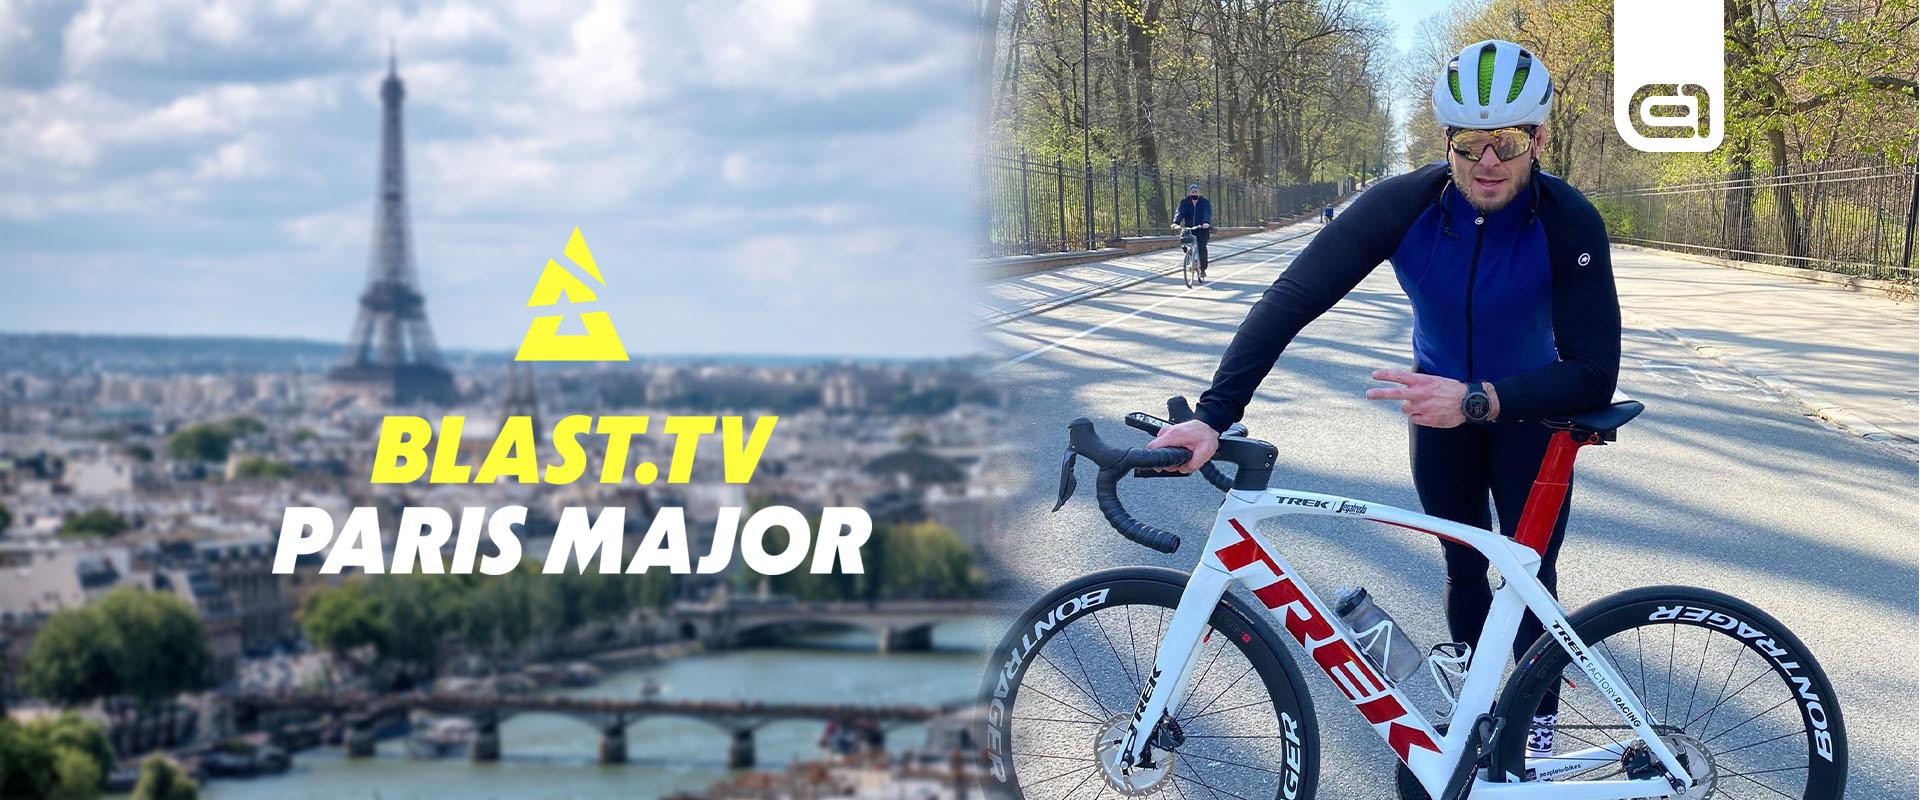 1 800 kilométert biciklizik Pasha, hogy támogassa a lengyel csapatot Párizsban